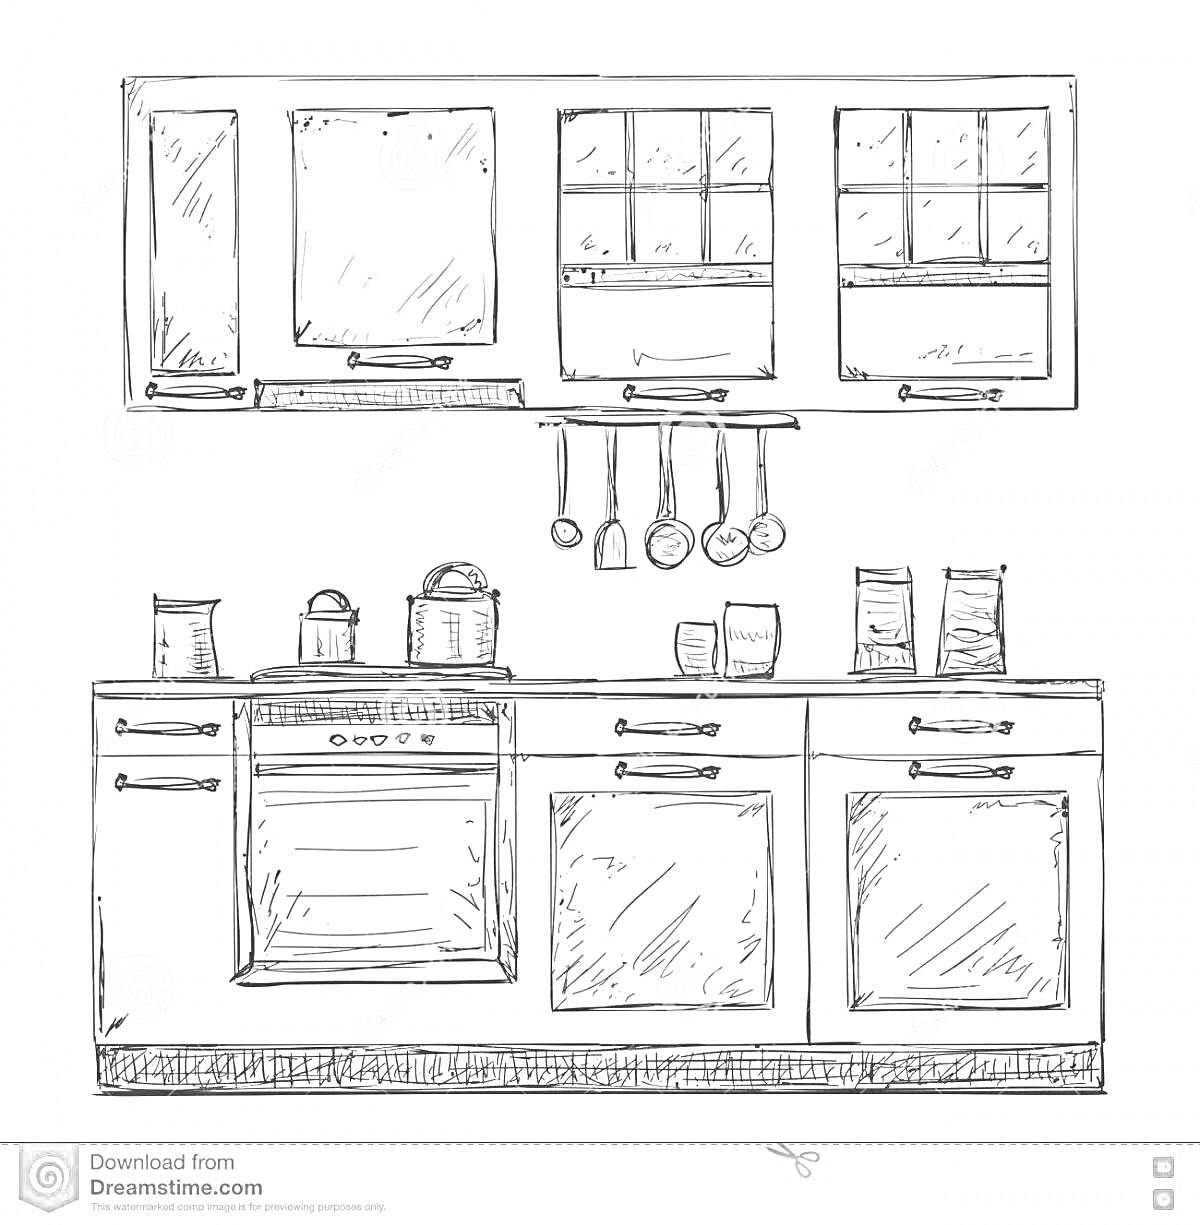 На раскраске изображено: Кухонный шкаф, Раковина, Посуда, Кастрюли, Кухонные принадлежности, Полотенце